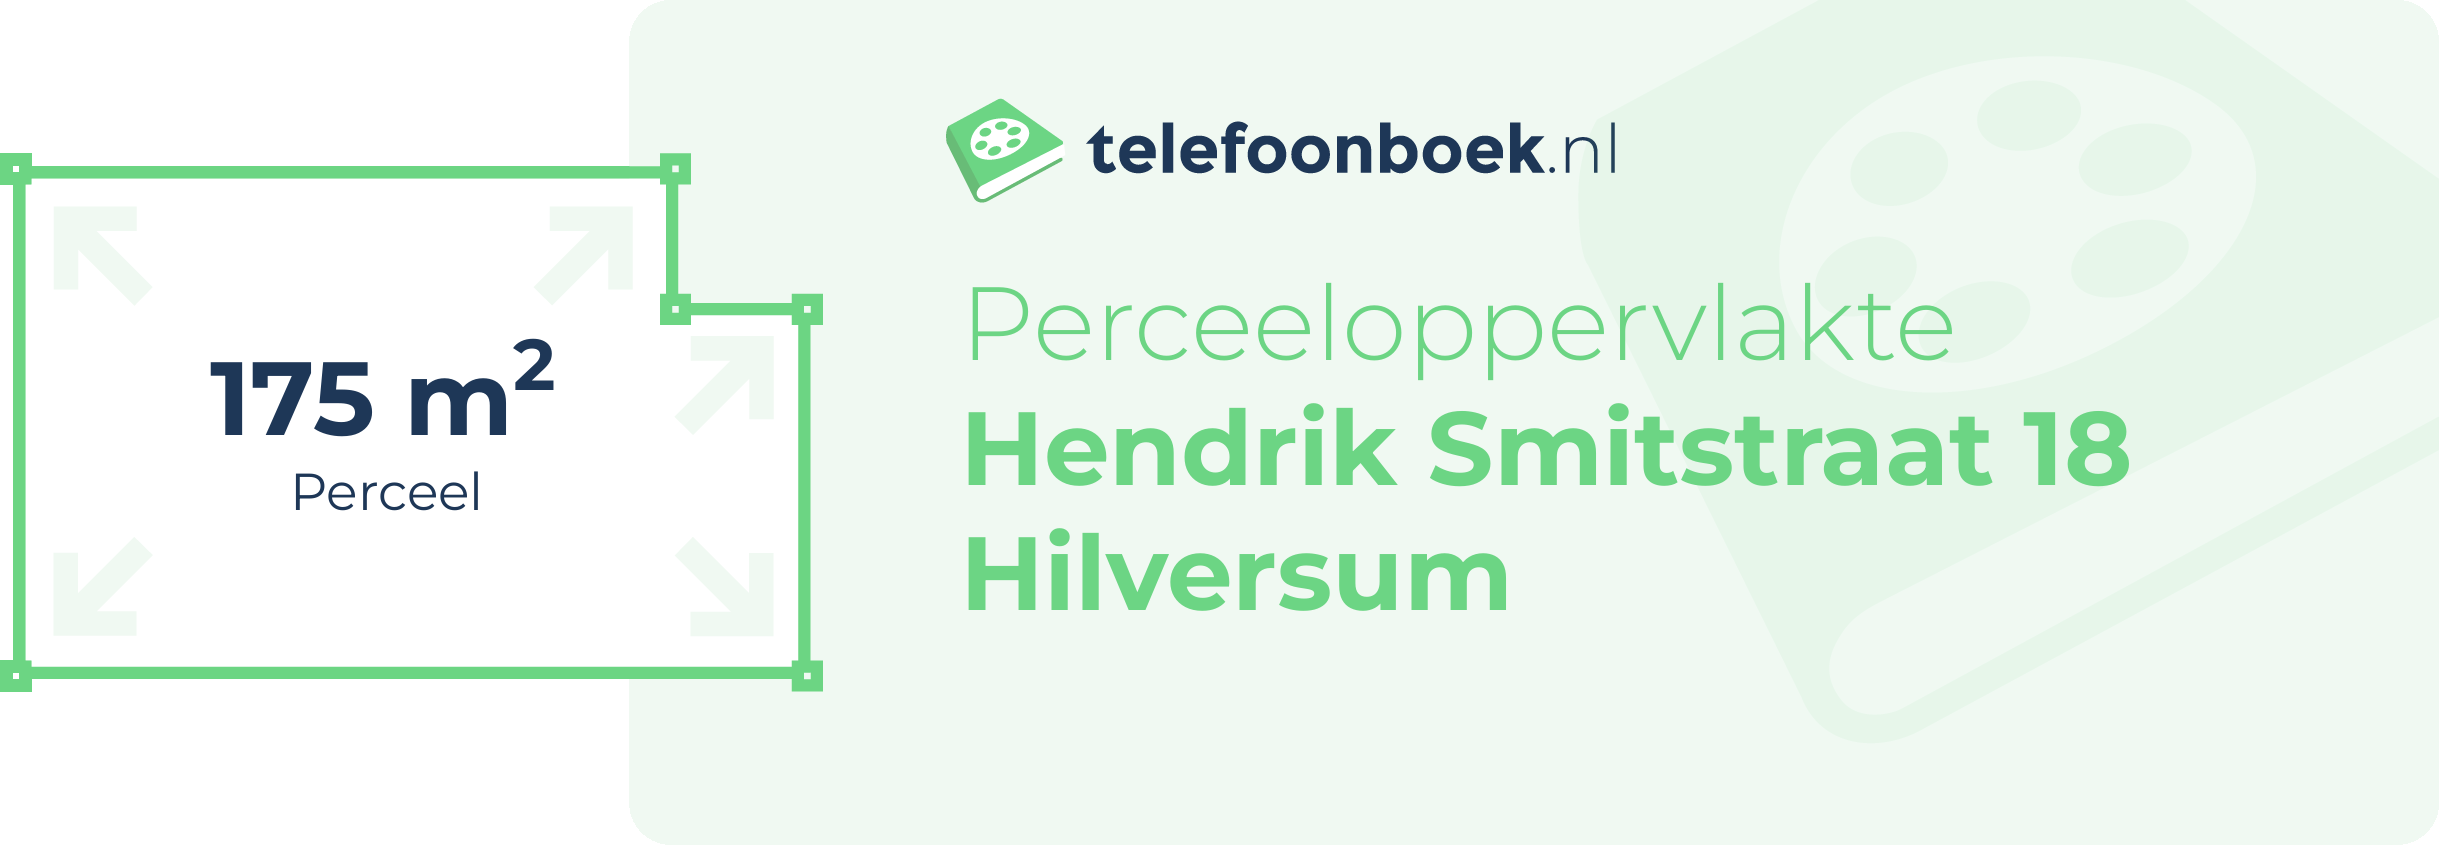 Perceeloppervlakte Hendrik Smitstraat 18 Hilversum